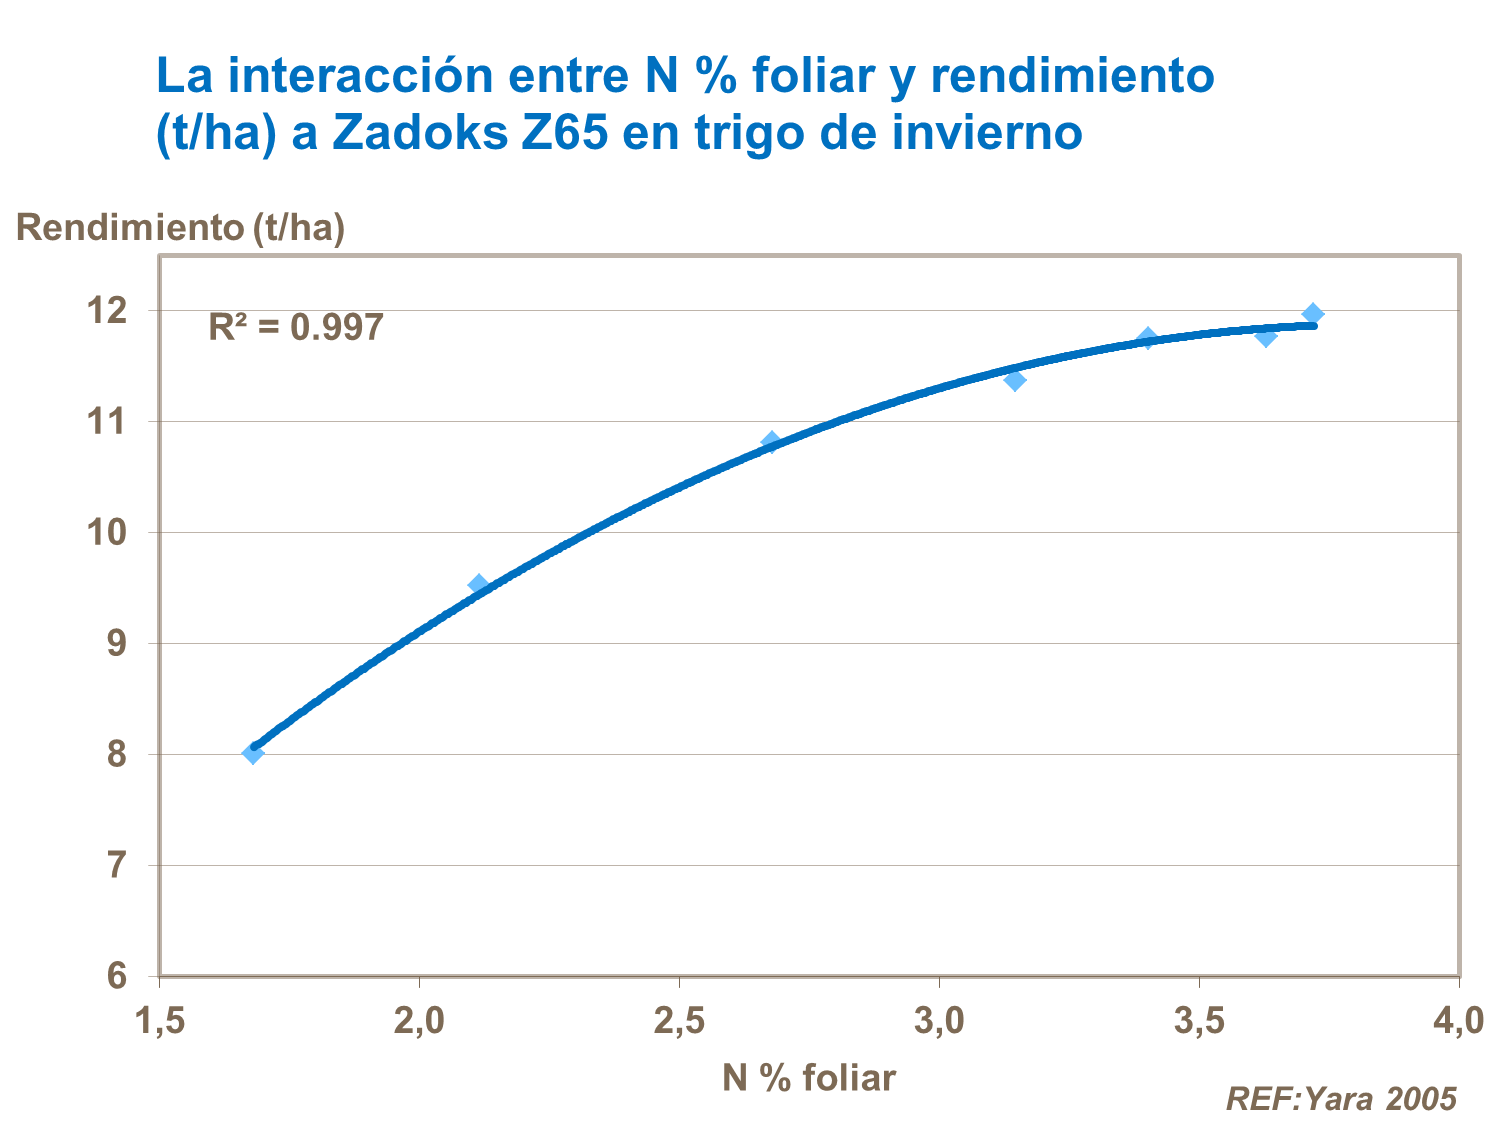 19 La interacción entre N % foliar a Zadoks Z65 en trigo de iinvierno y rendimiento (t ha)